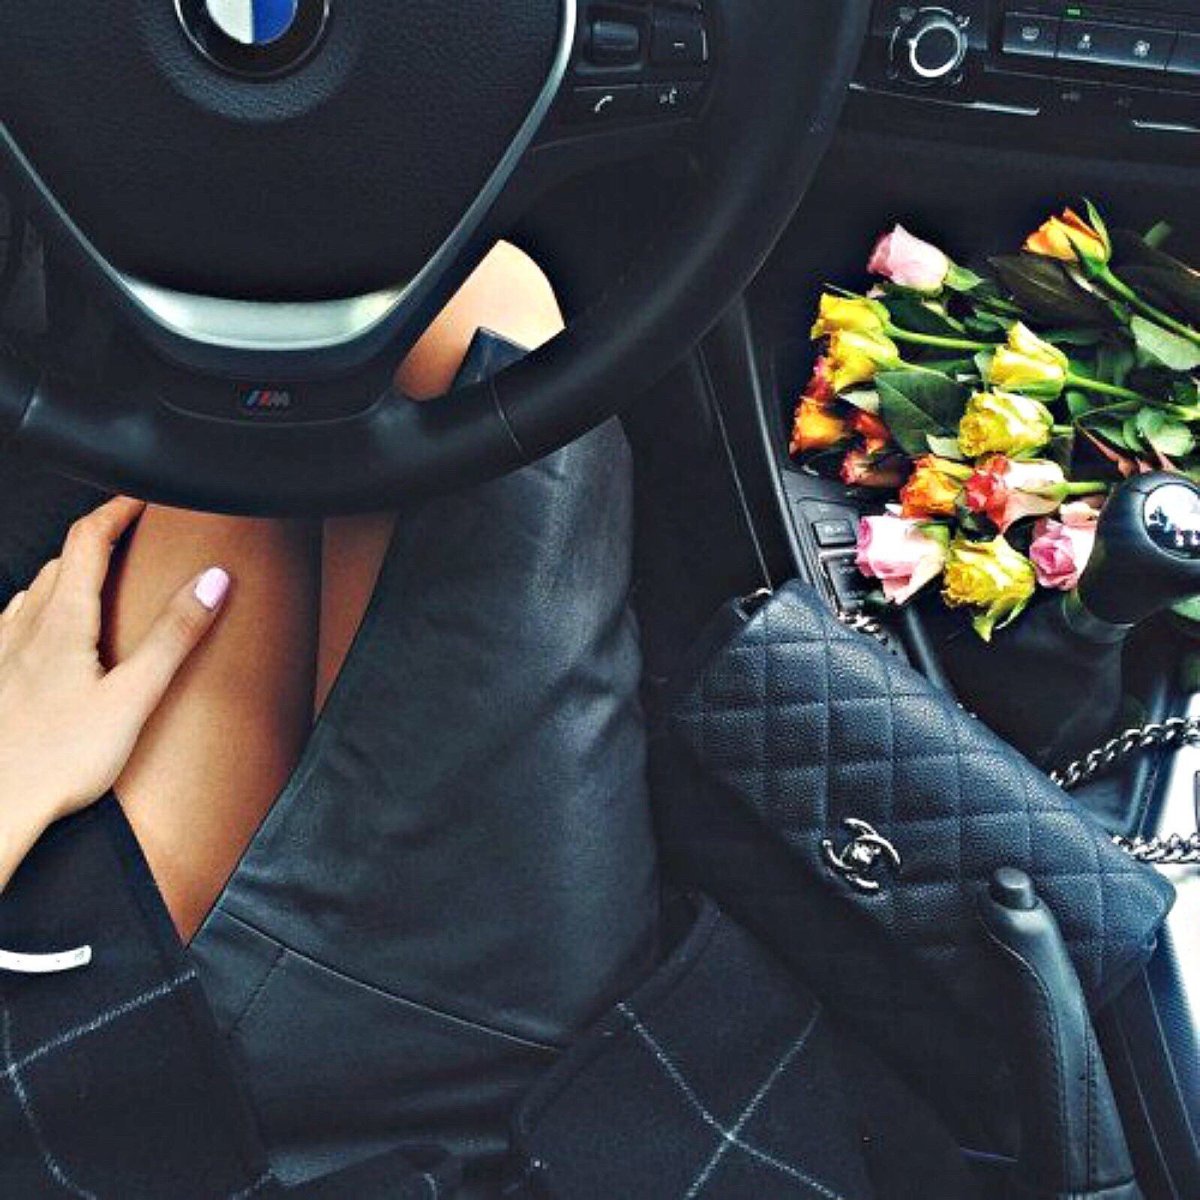 Девушка с цветами в машине